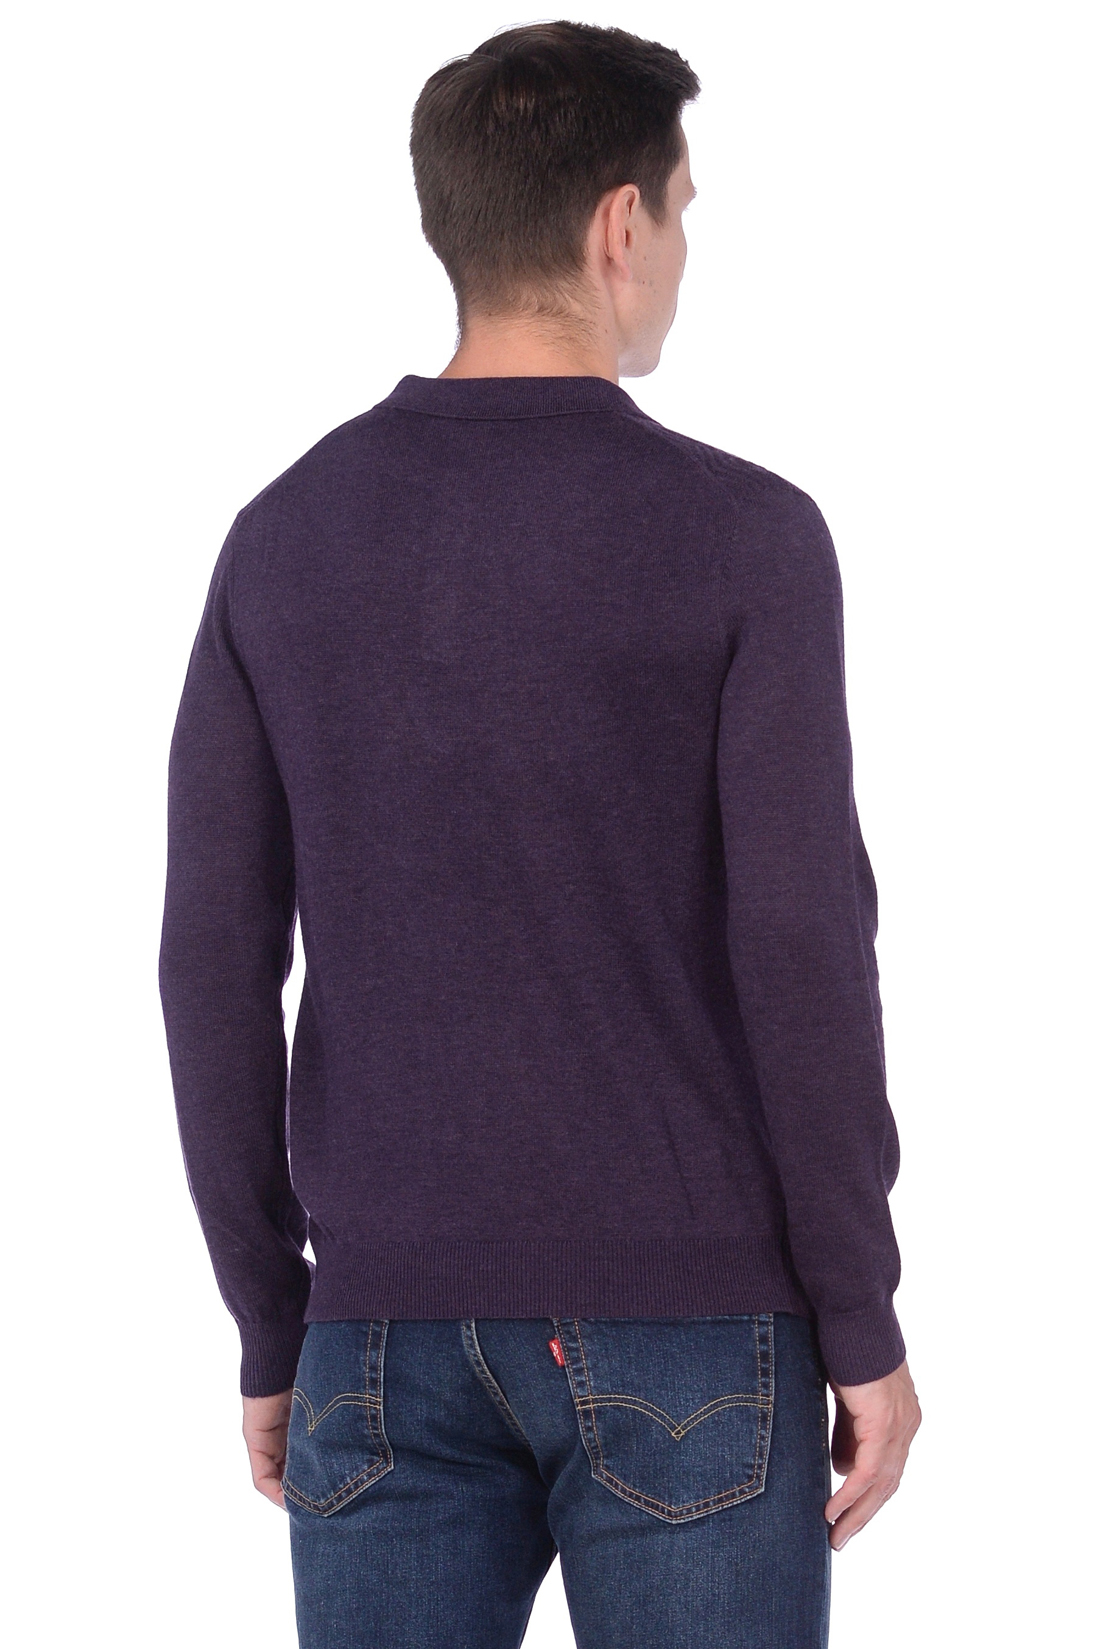 Джемпер с воротником-поло и рельефным узором (арт. baon B638501), размер L, цвет plum melange#фиолетовый Джемпер с воротником-поло и рельефным узором (арт. baon B638501) - фото 2